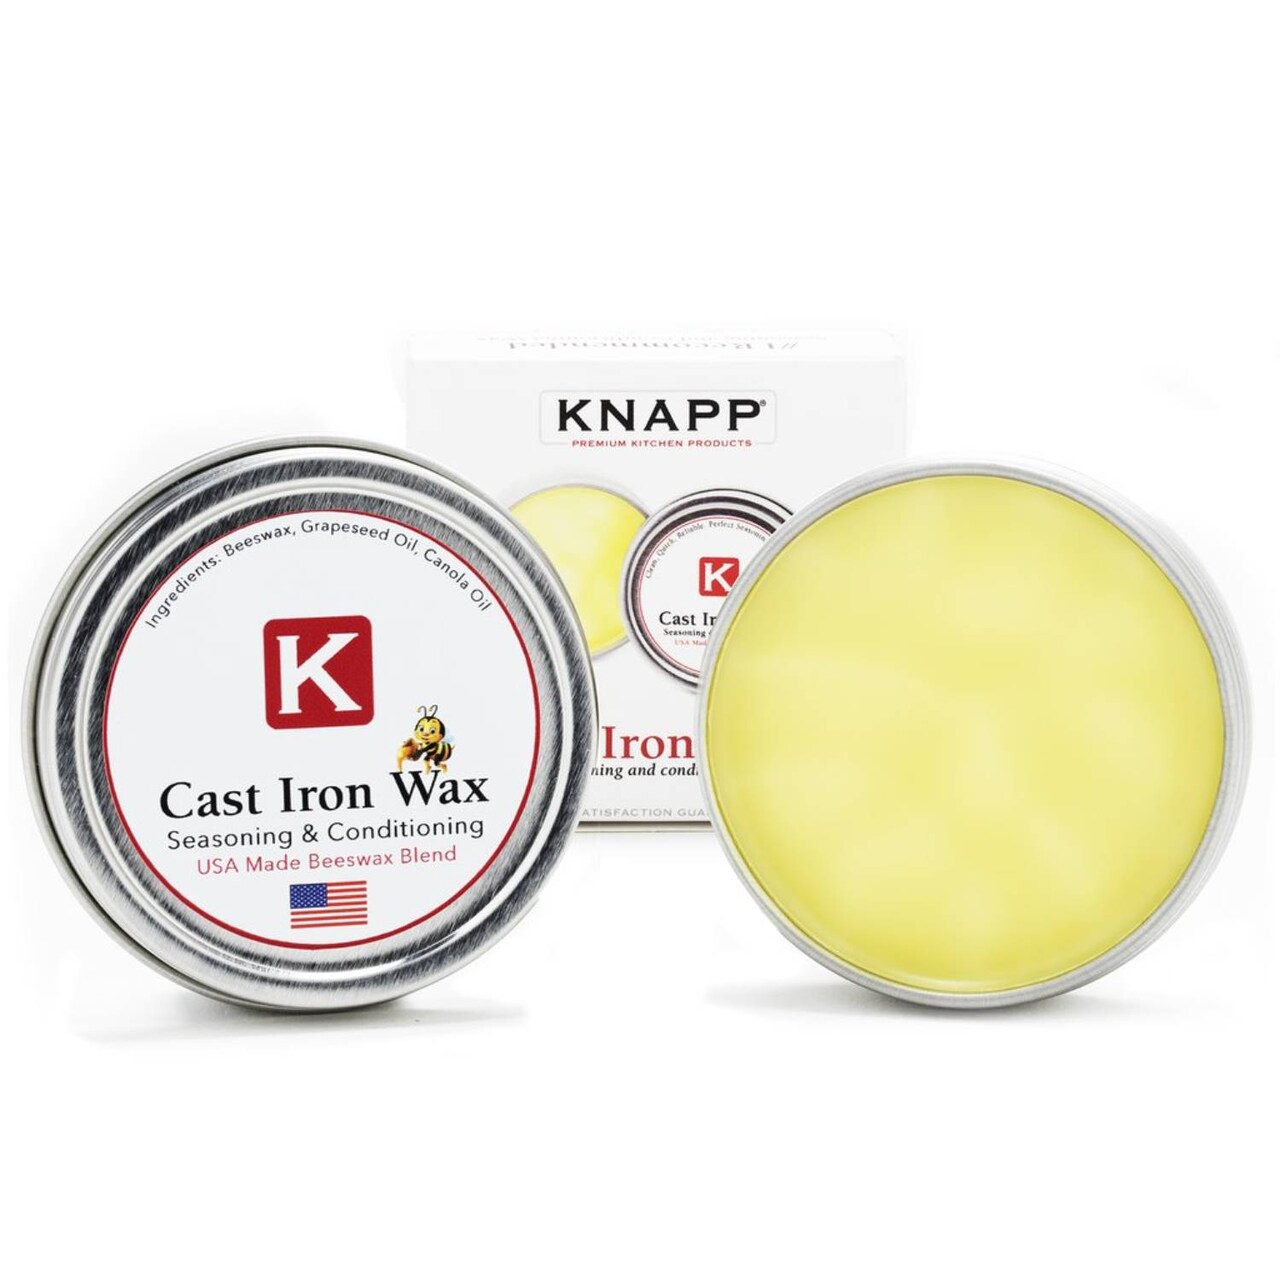 Knapp Made Seasoning Conditioner Natural Oils Restore Cast Iron